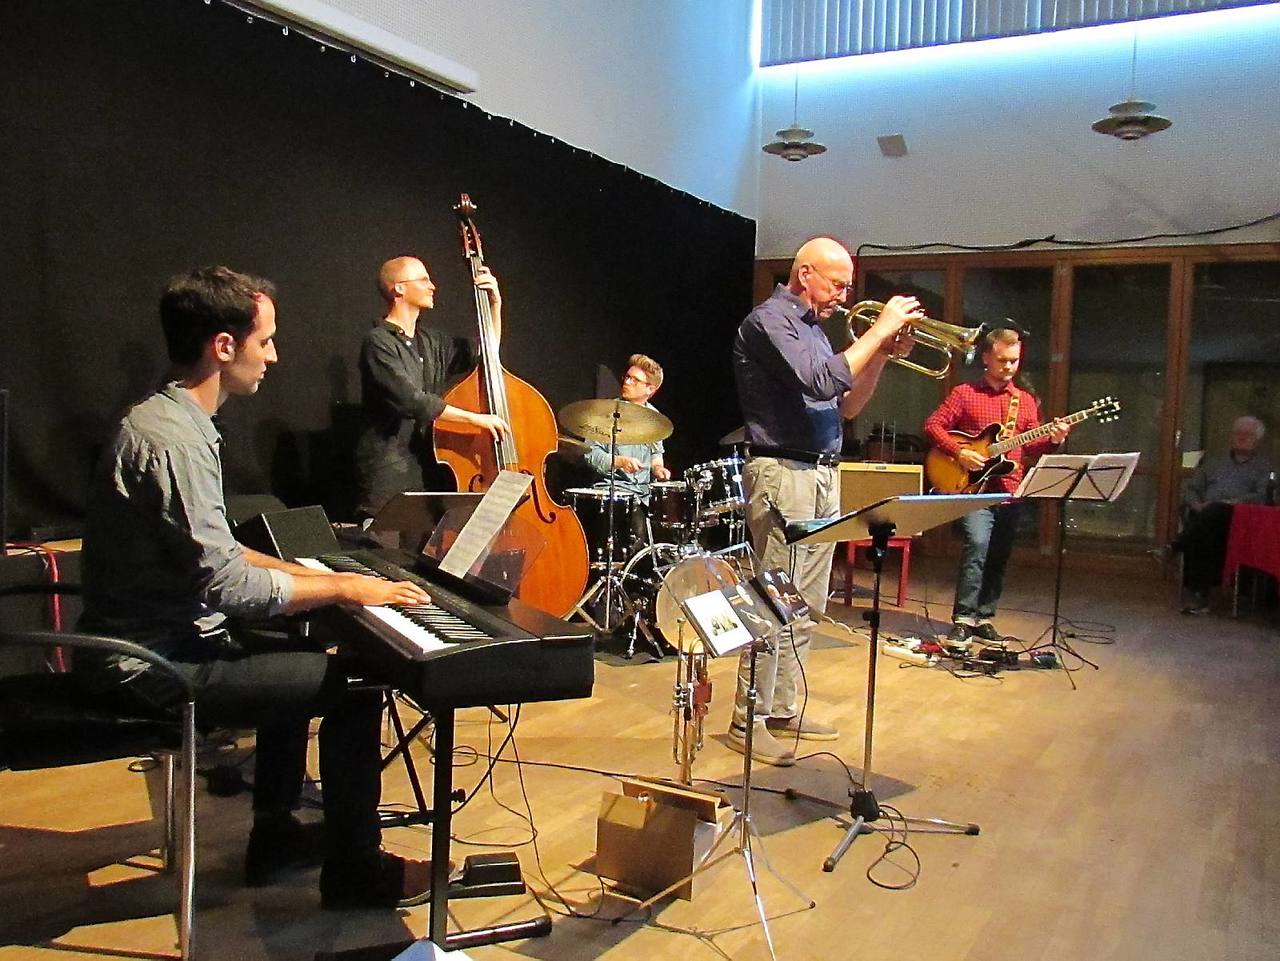 Fünf Musiker, ein Genre: Das Beckerhoff-Quintett entführte das Publikum im Huk in die Welt des Jazz.